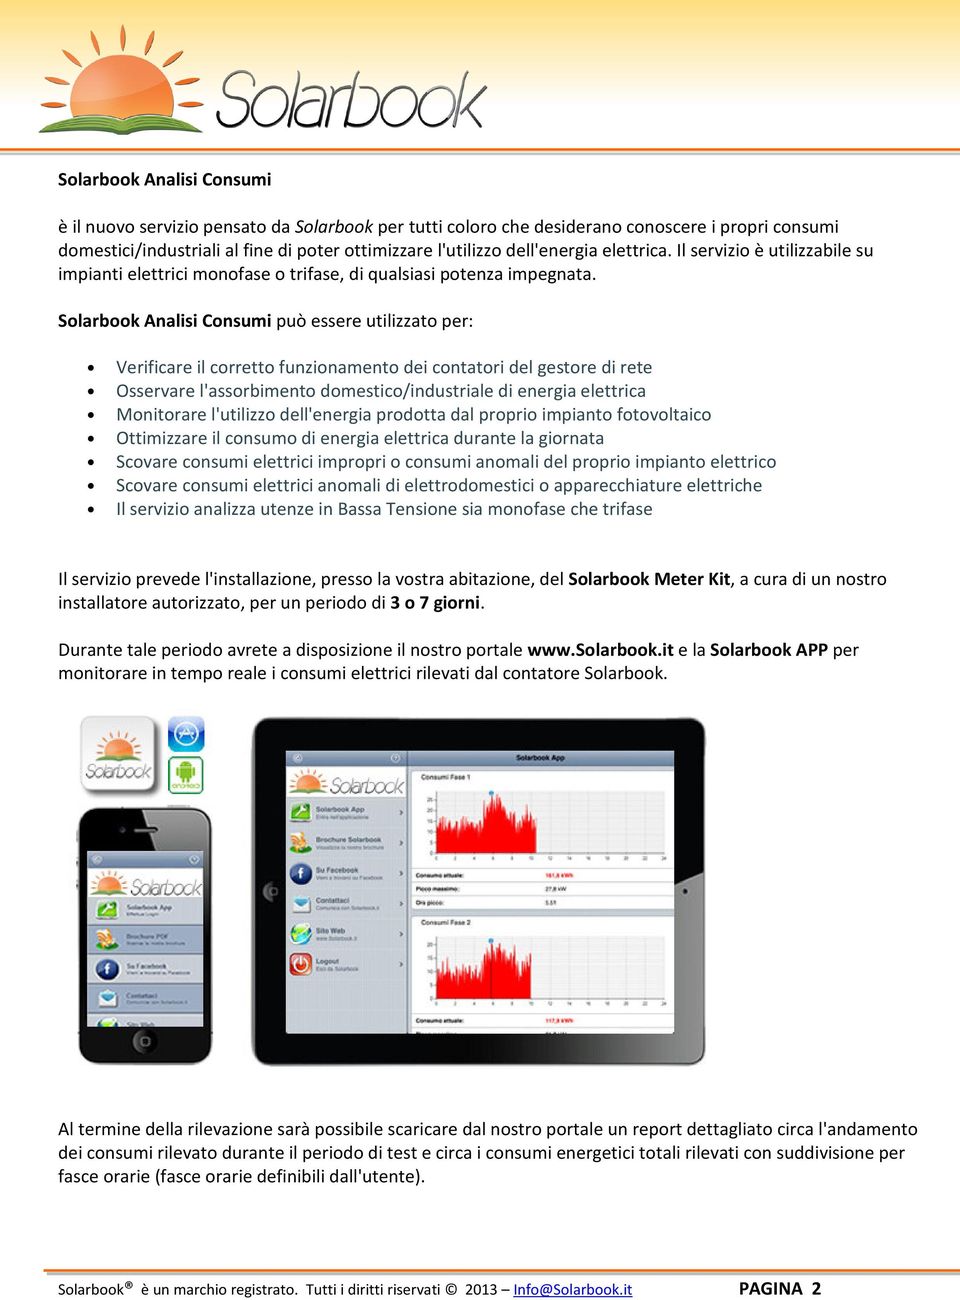 Solarbook Analisi Consumi può essere utilizzato per: Verificare il corretto funzionamento dei contatori del gestore di rete Osservare l'assorbimento domestico/industriale di energia elettrica